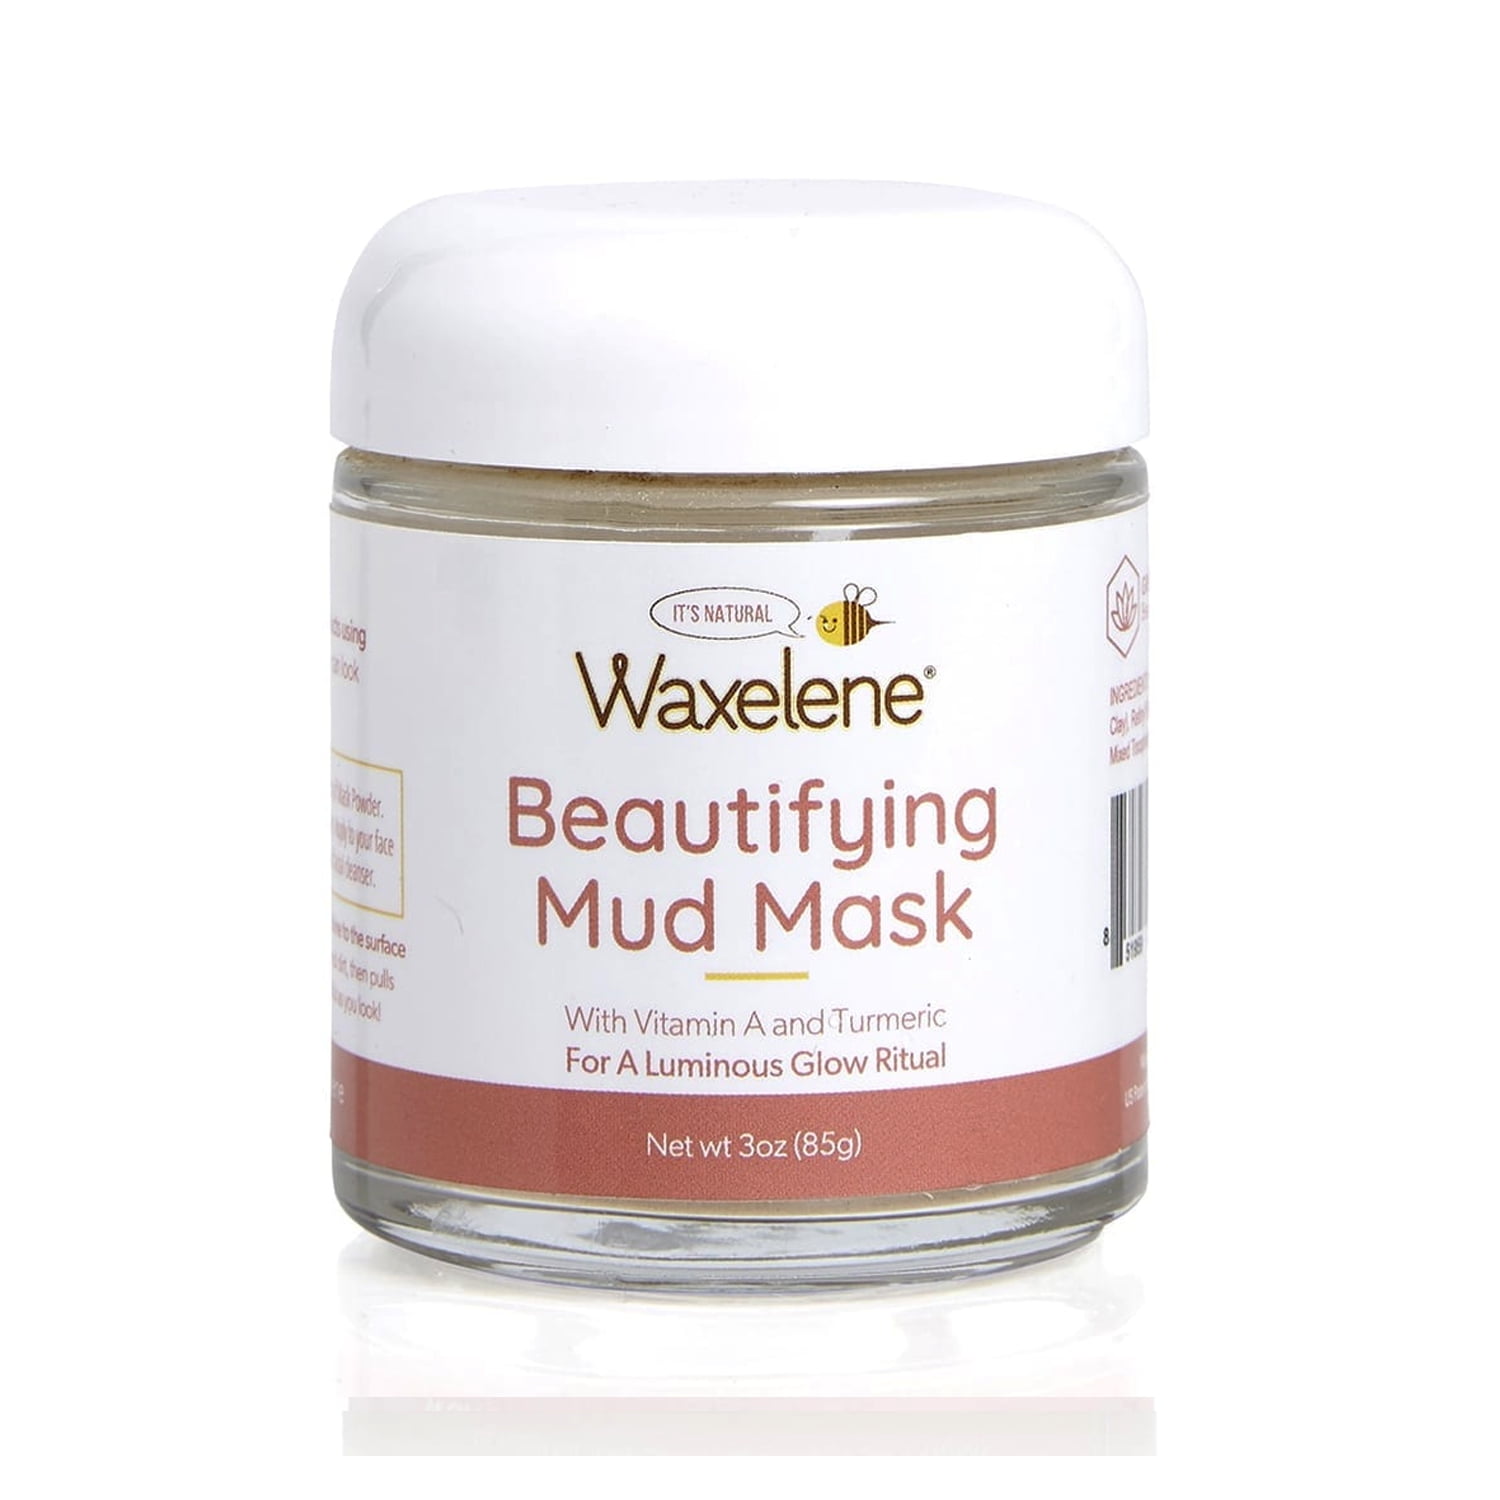 Waxelene Beautifying Mud Mask 3 oz, Pack of 2 